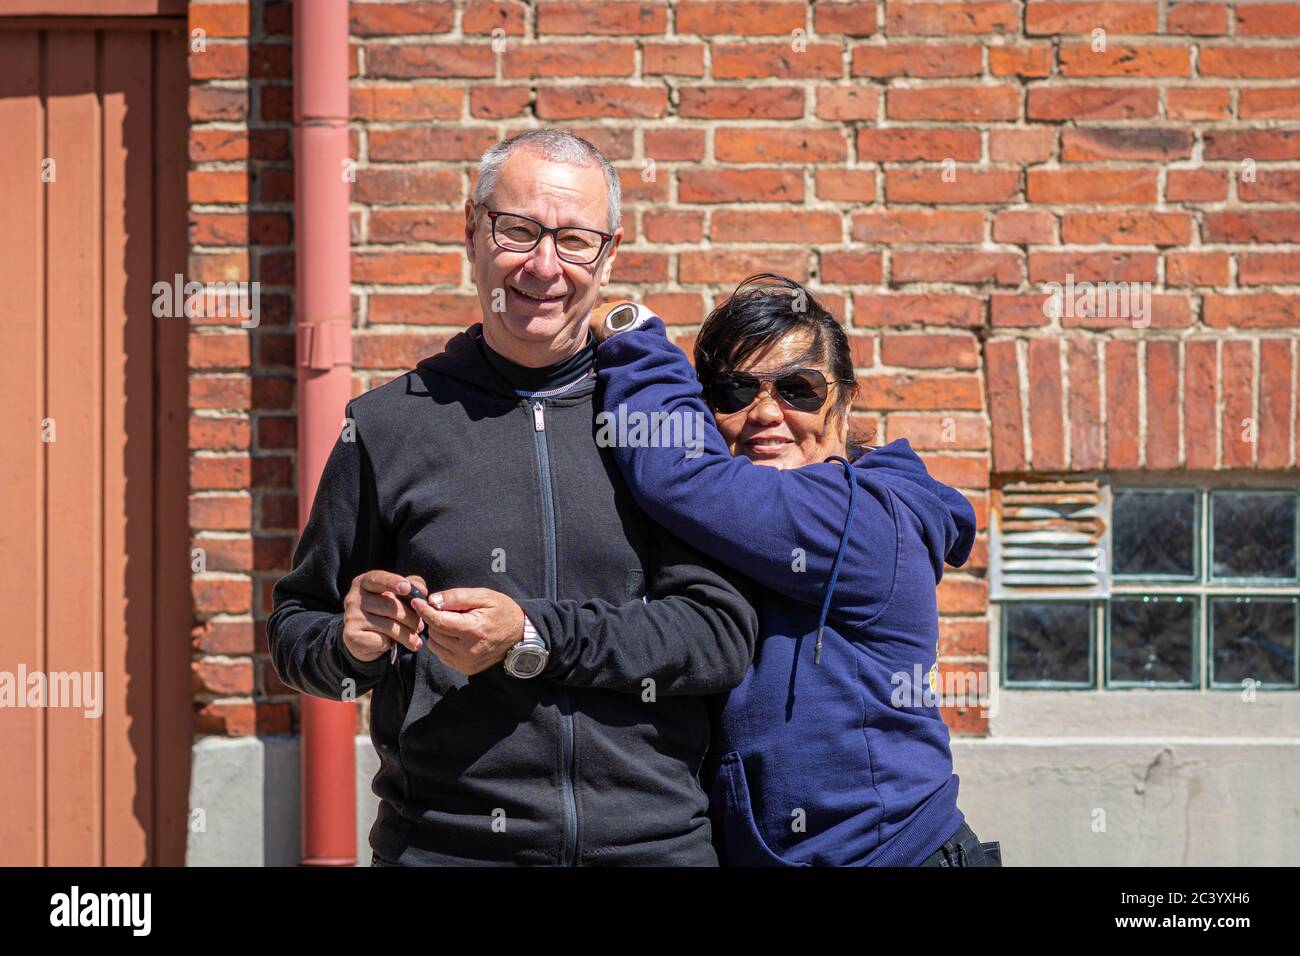 Un couple d'âge moyen (50+) mixte racial (caucasien et asiatique) se fait une excursion ensemble. Mur en brique rouge en arrière-plan Banque D'Images